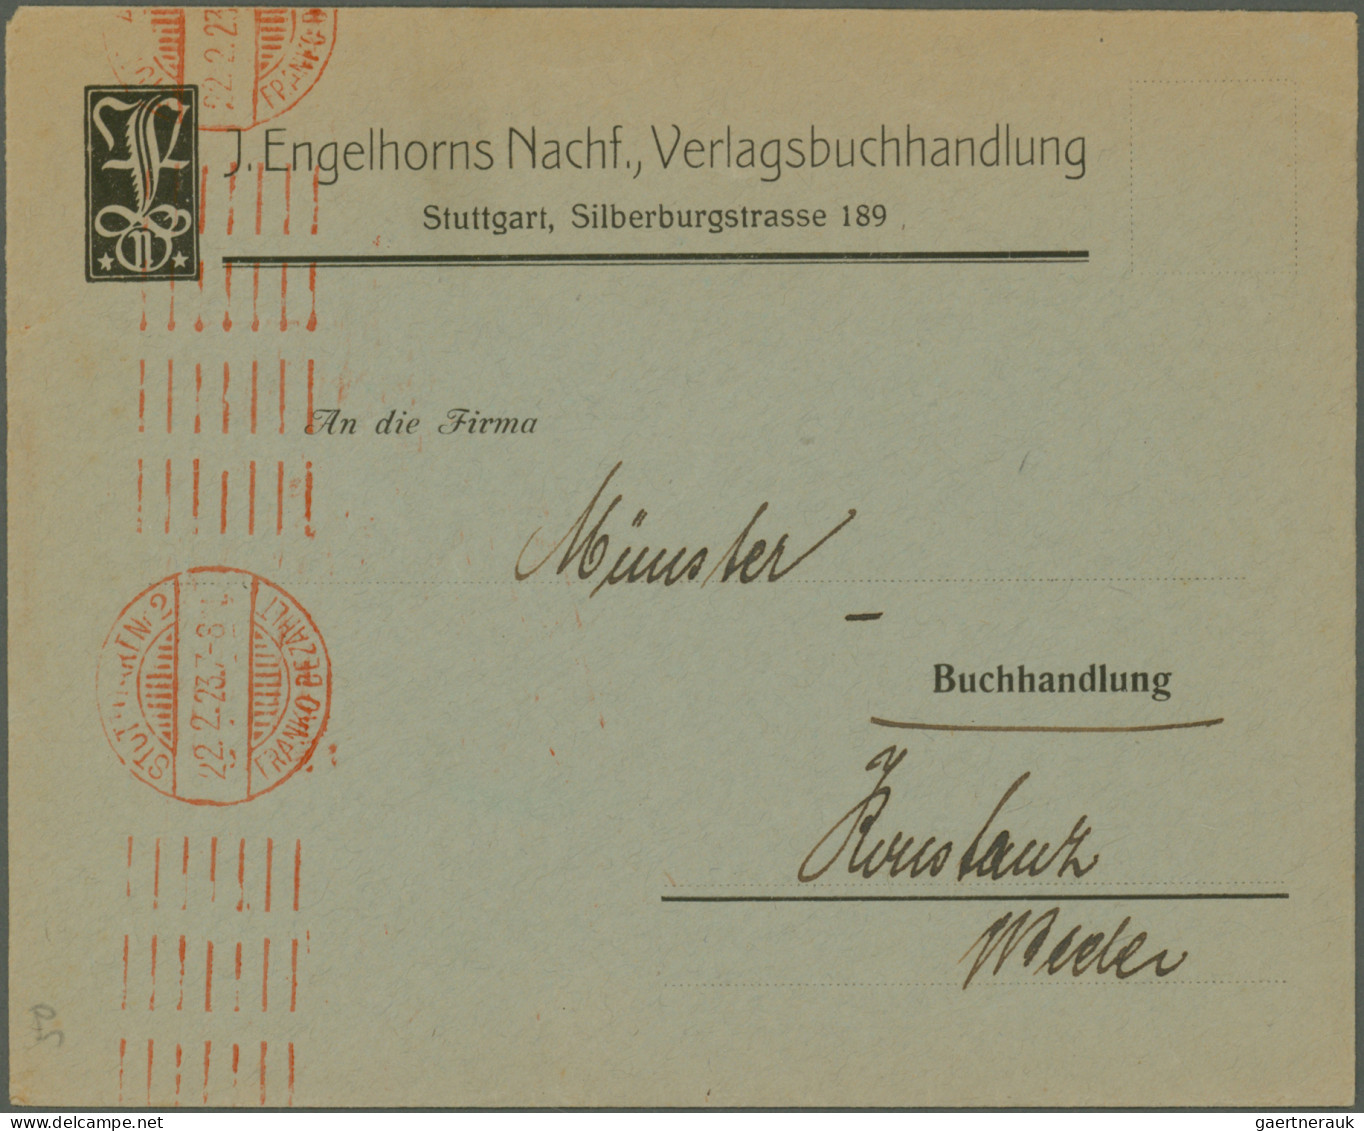 Deutsches Reich - Inflation: 1920/1923, vielseitige Partie von ca. 150 Briefen u